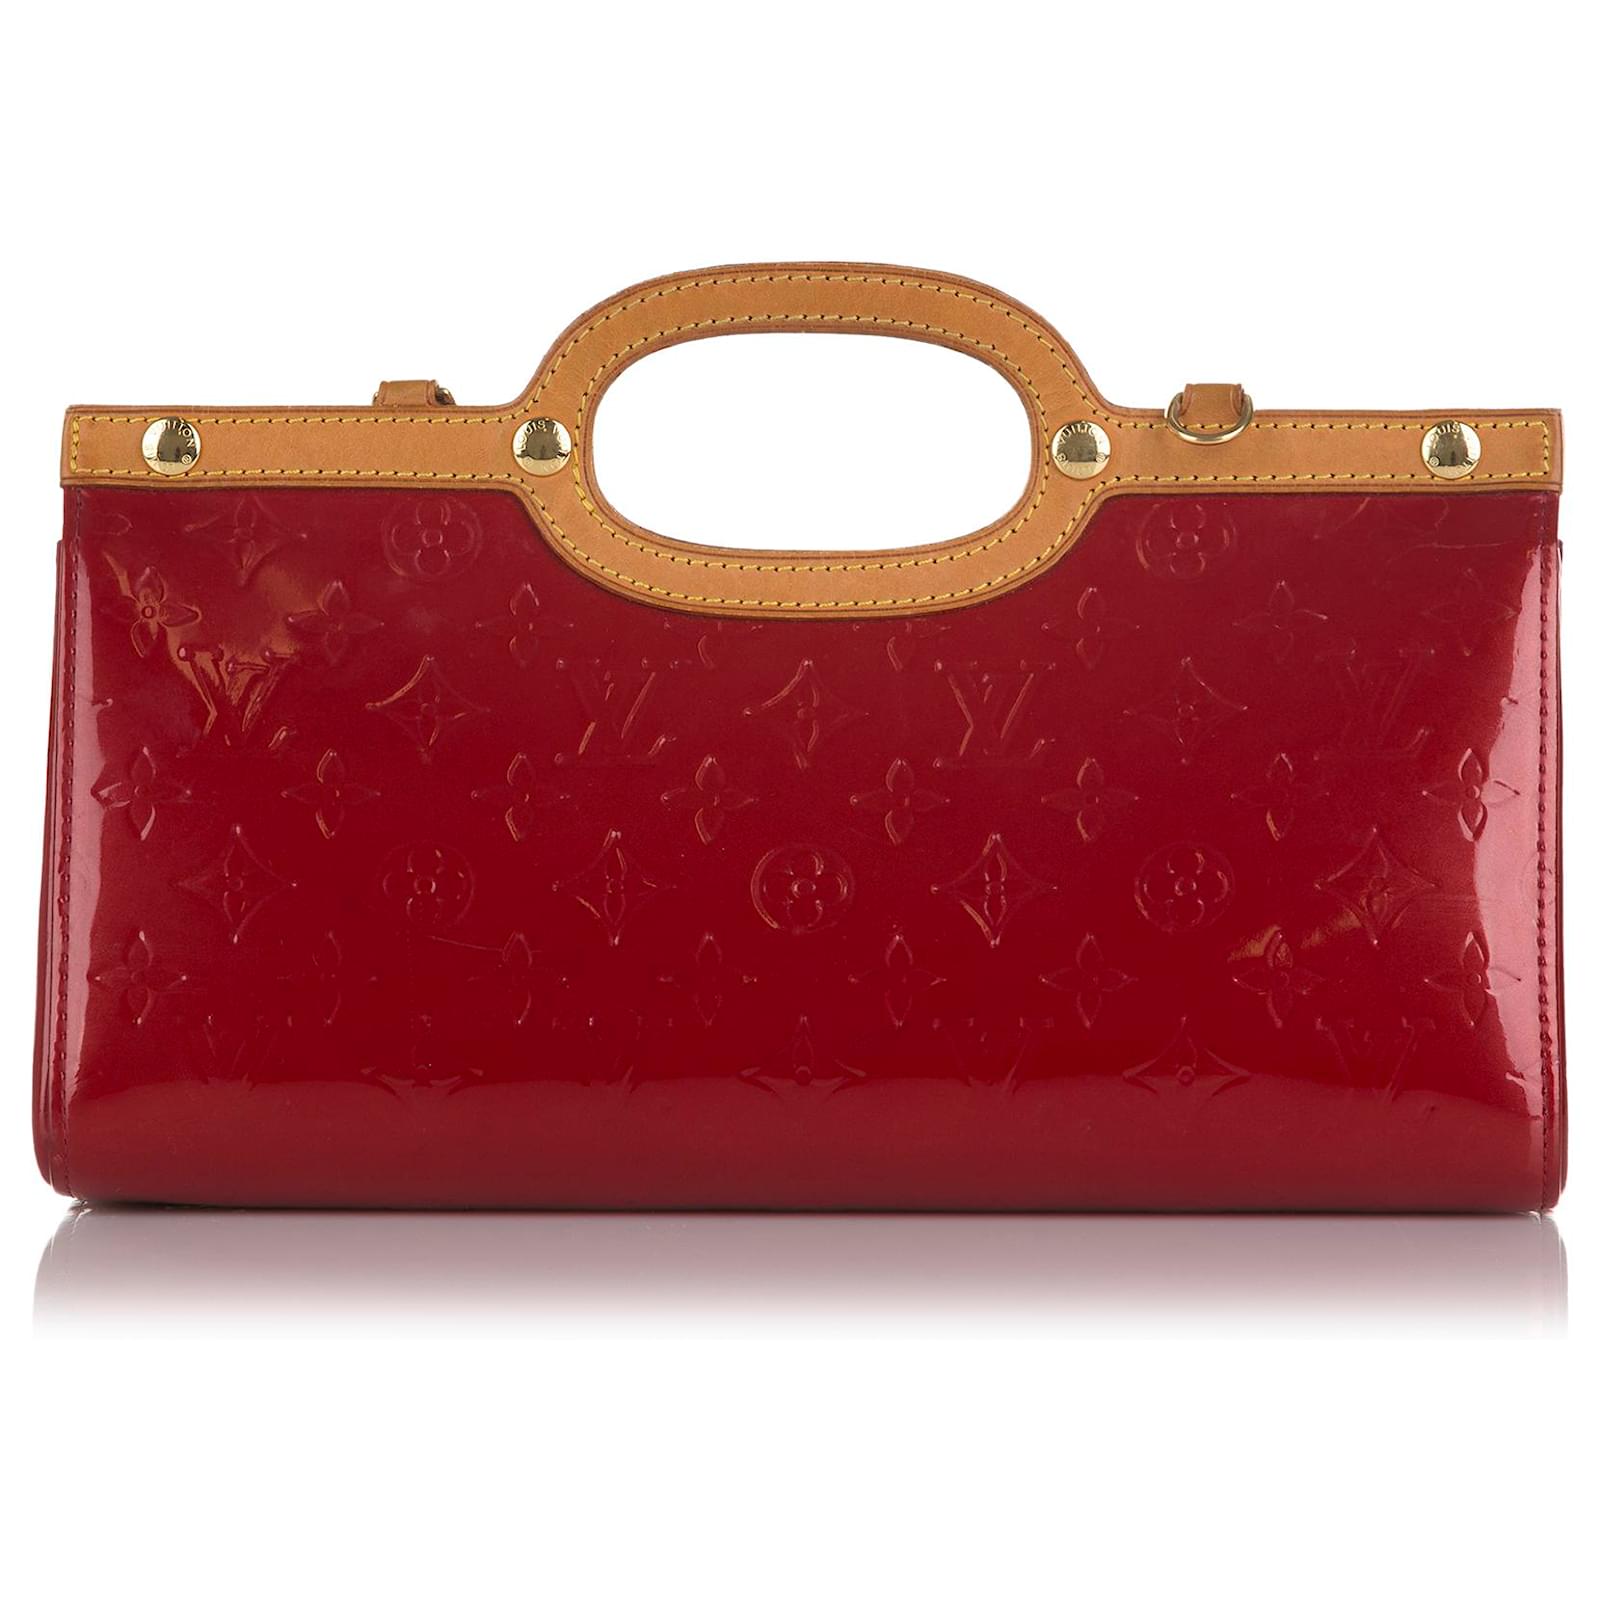 Louis Vuitton Vernis Roxbury Drive, Women's Fashion, Bags